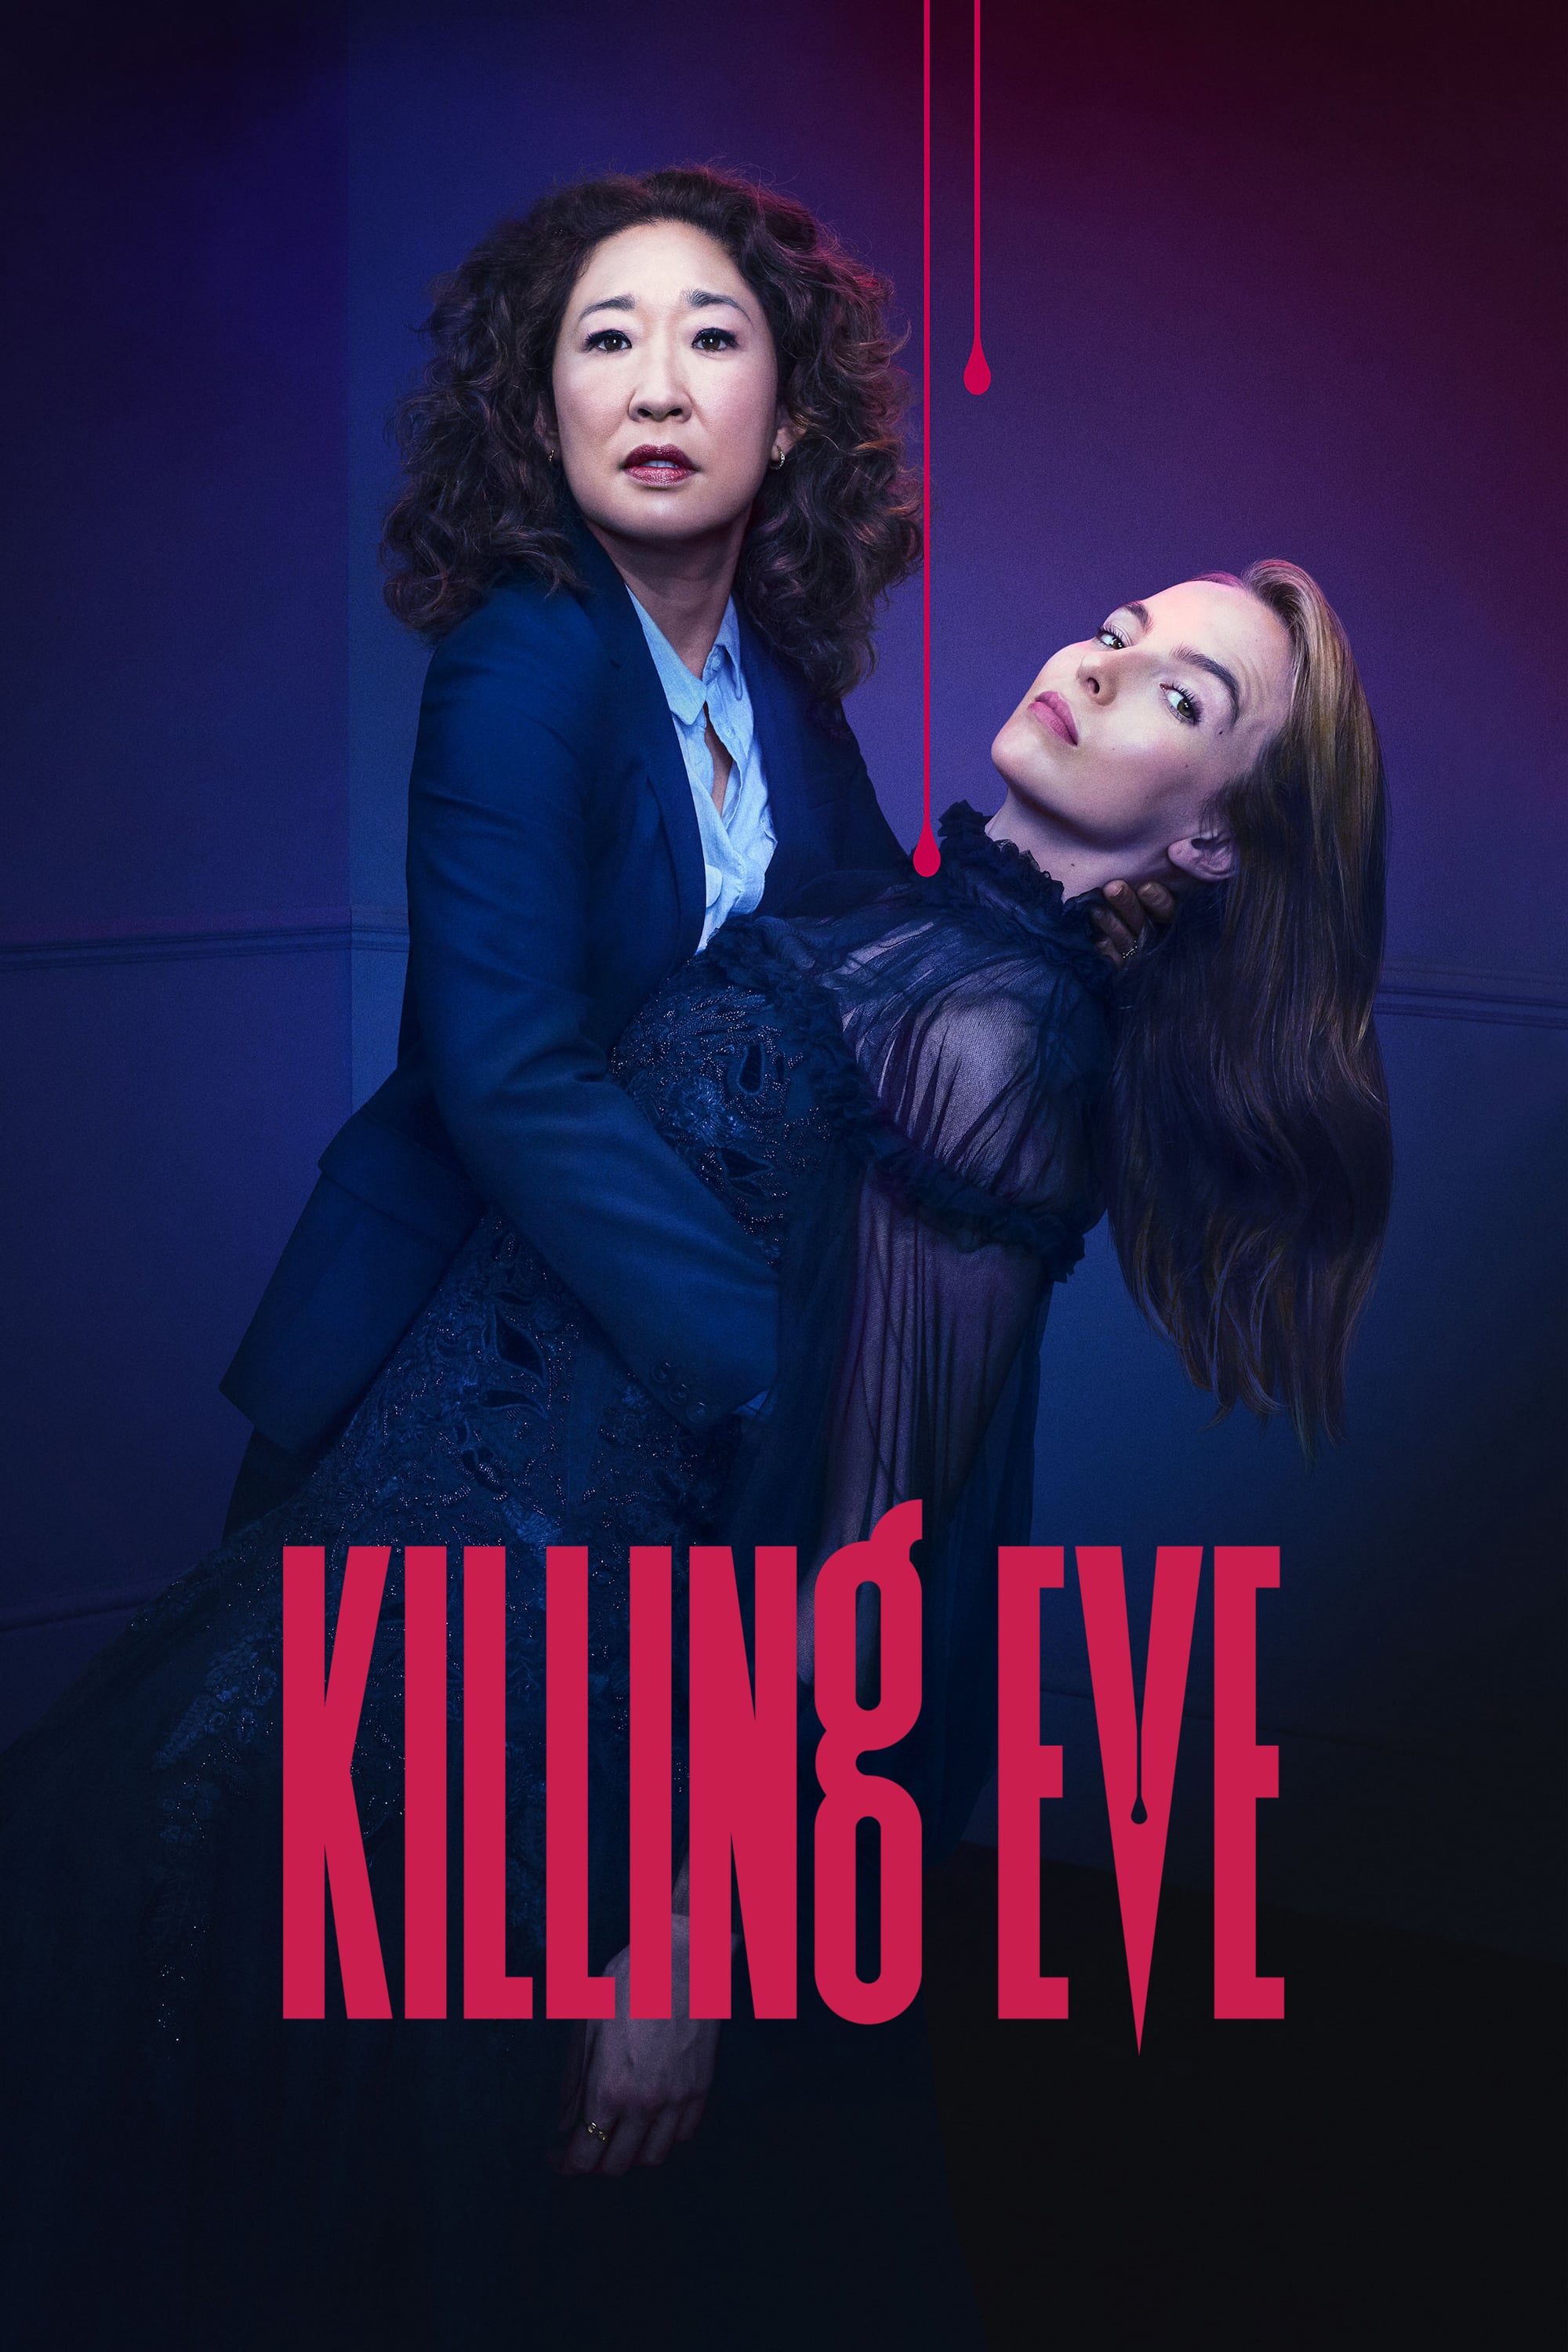 killing eve season 2 episode 2 watch online free